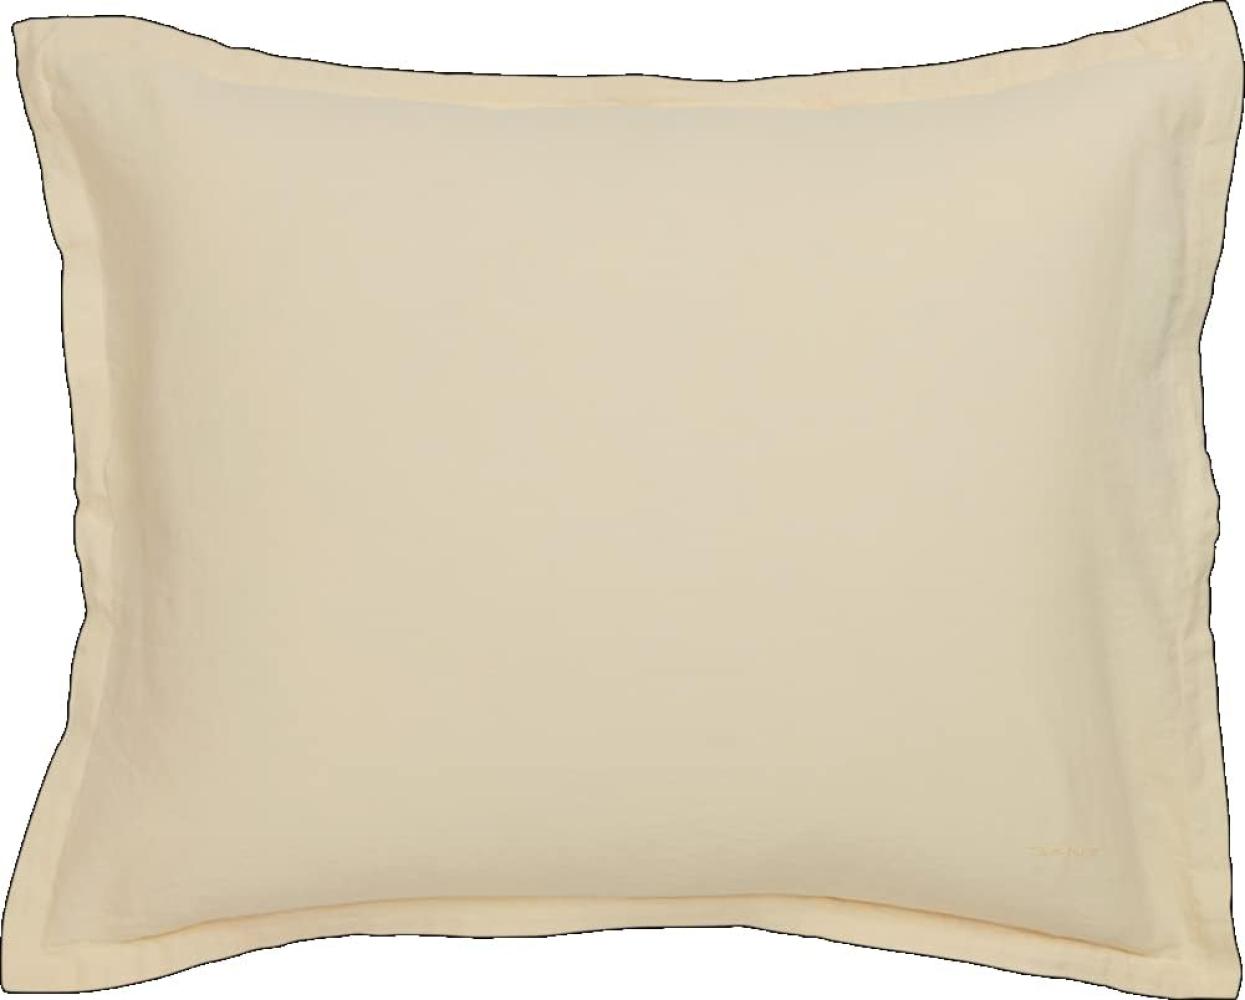 Gant Home Kopfkissenbezug Cotton Linen Butter Yellow (80x80cm) 851025901-717 Bild 1